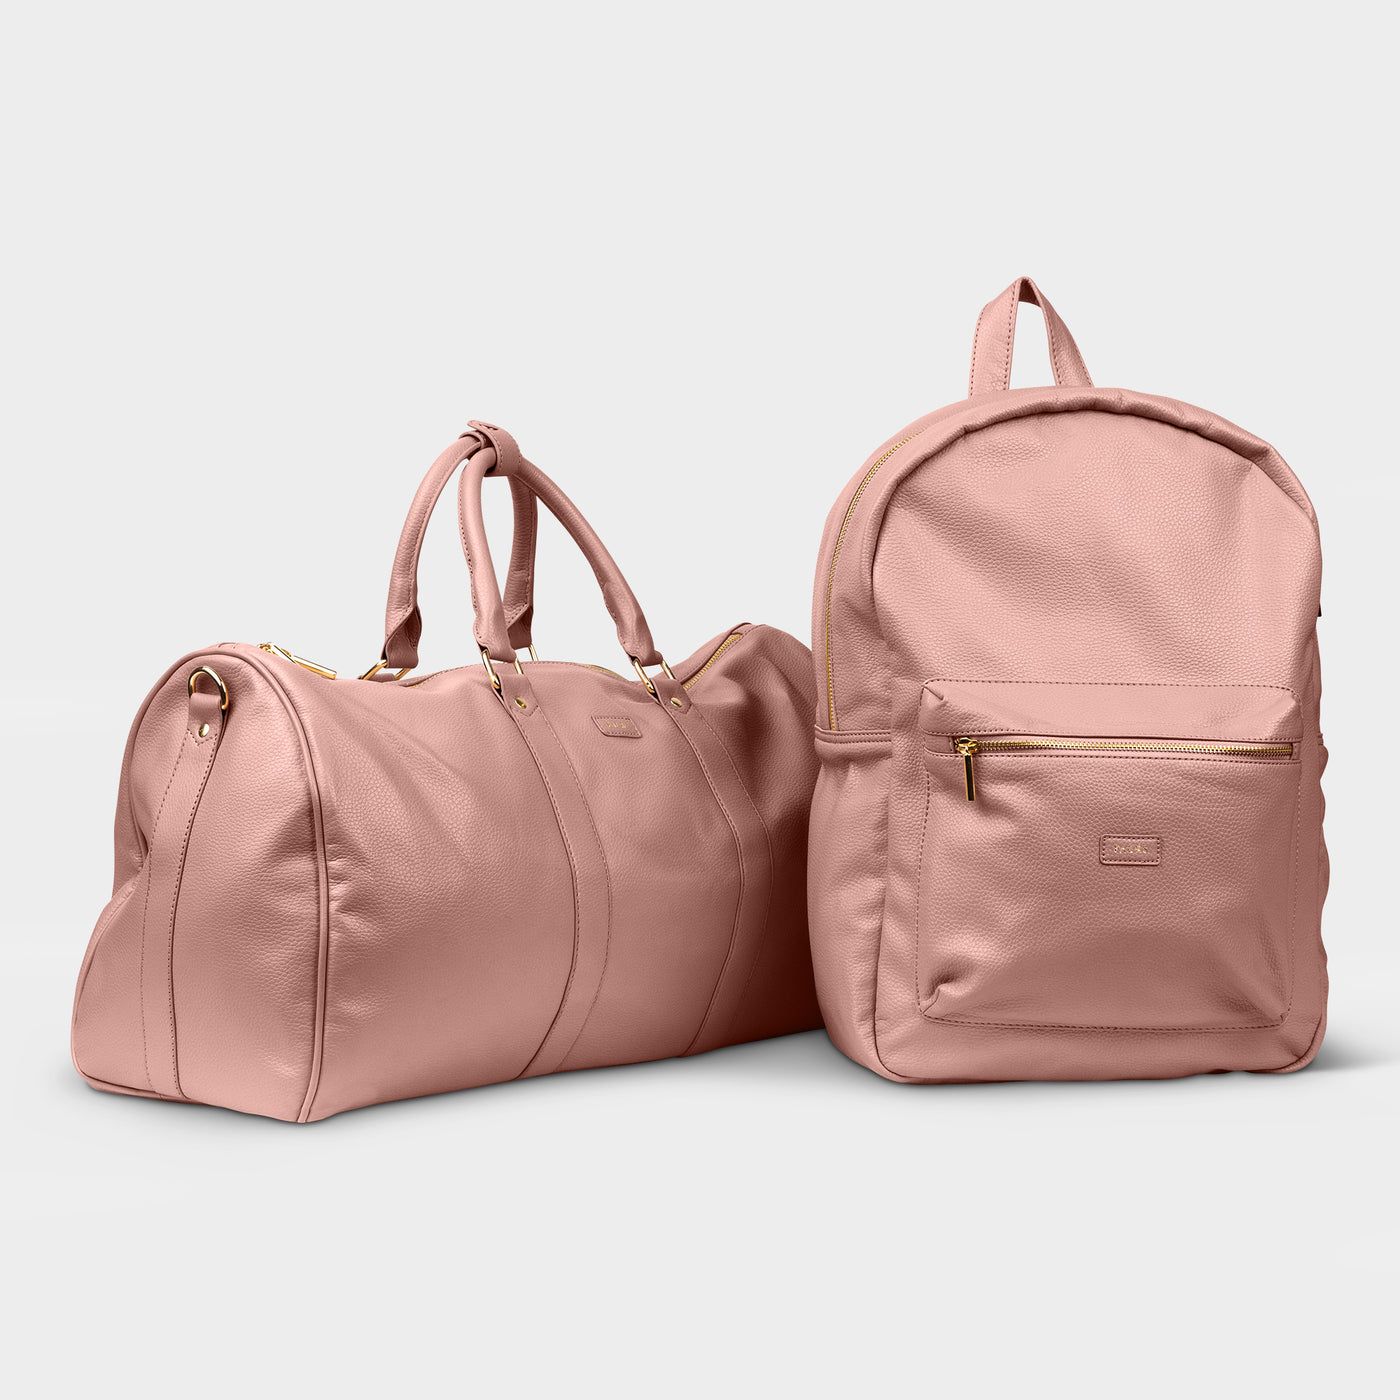 Gramercy Bag Set - Packs